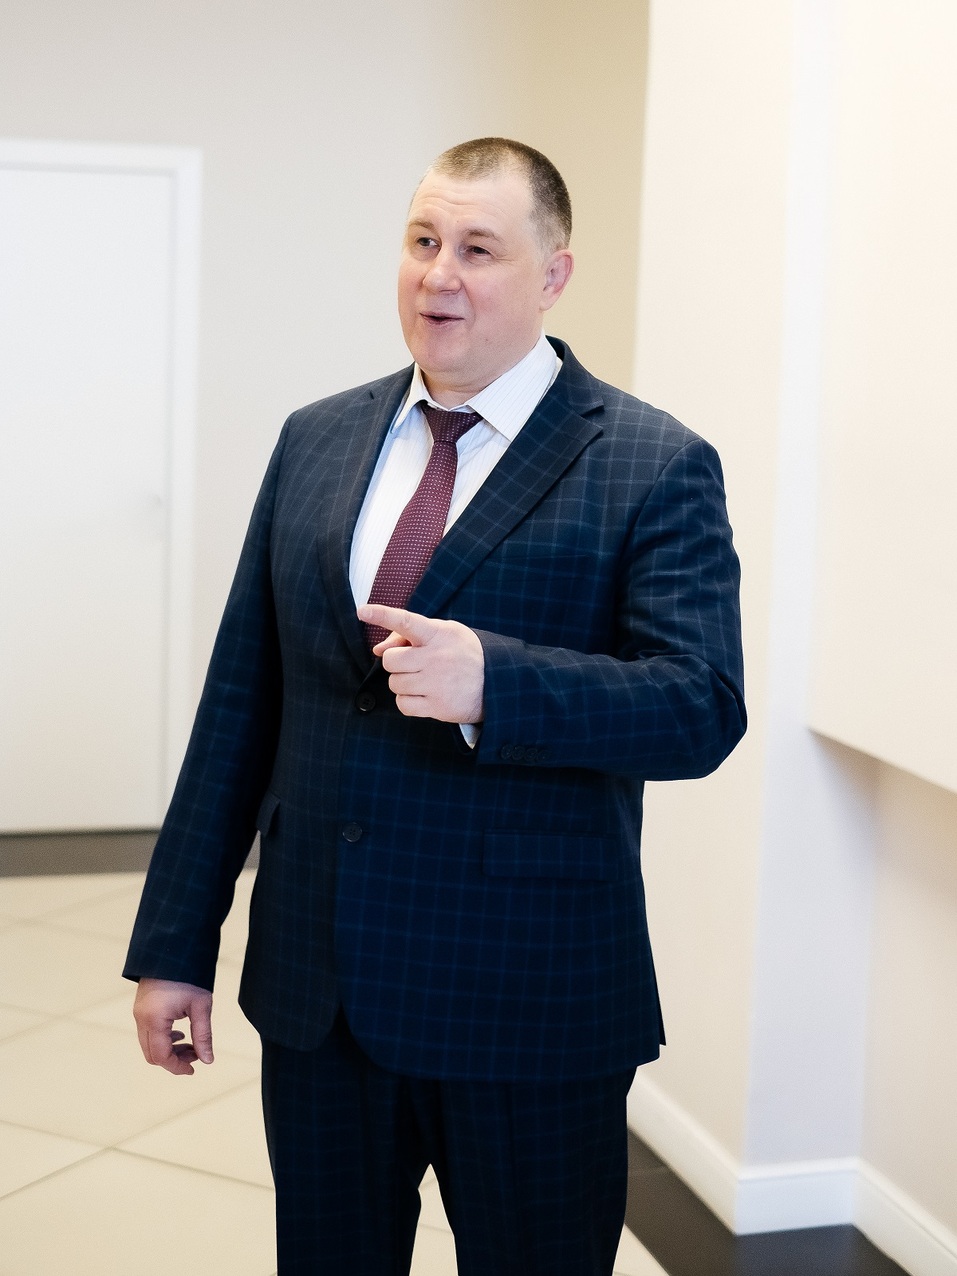 Андрей Коршунов: «Благополучие и уверенность доверителей — главная оценка работы адвоката» 2